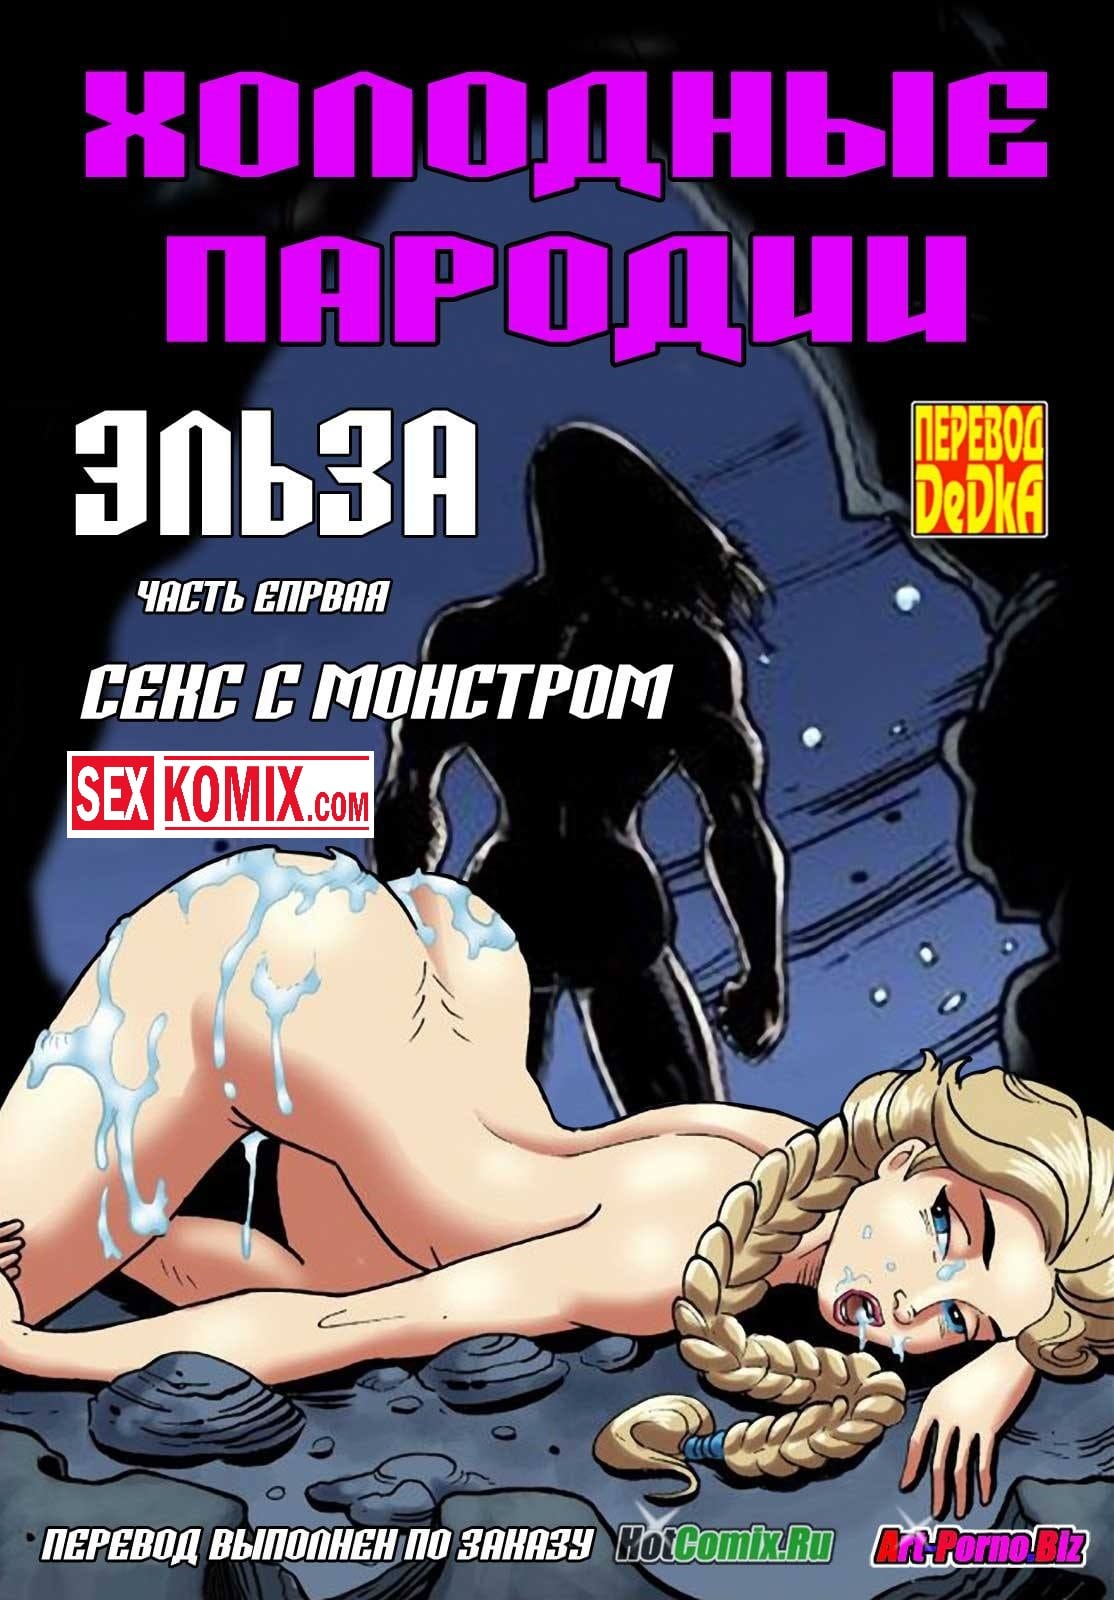 Постер (плакат) Герои Комиксов Марвел